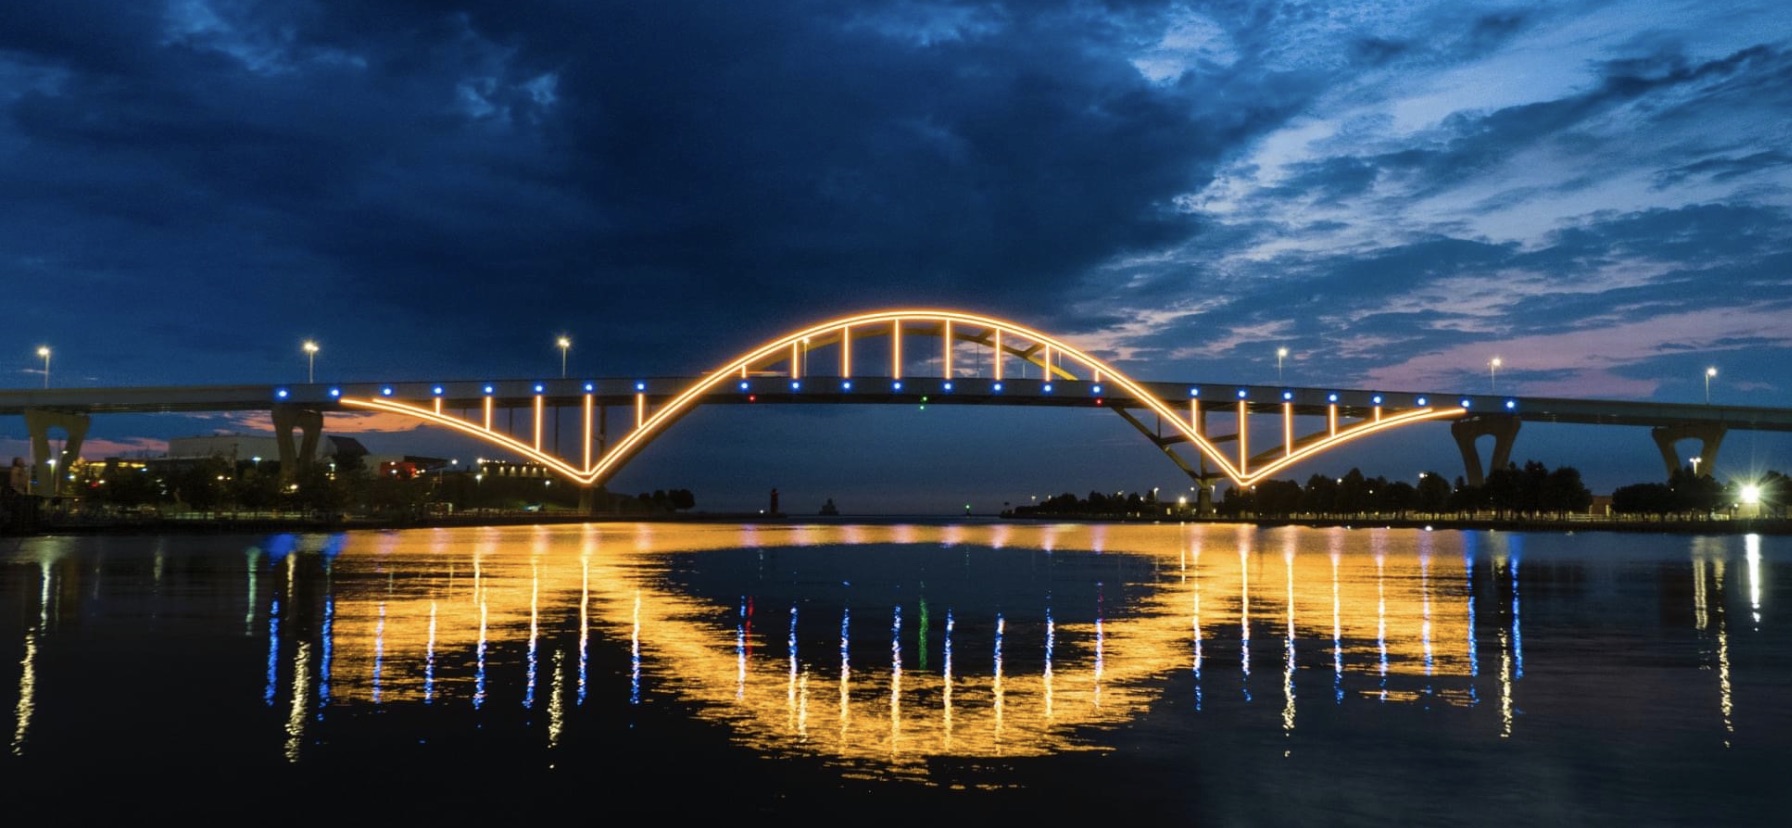 【新闻图片】密尔沃基采用昕诺飞的智能互联LED照明系统，点亮地标丹尼尔霍恩纪念大桥01.jpg